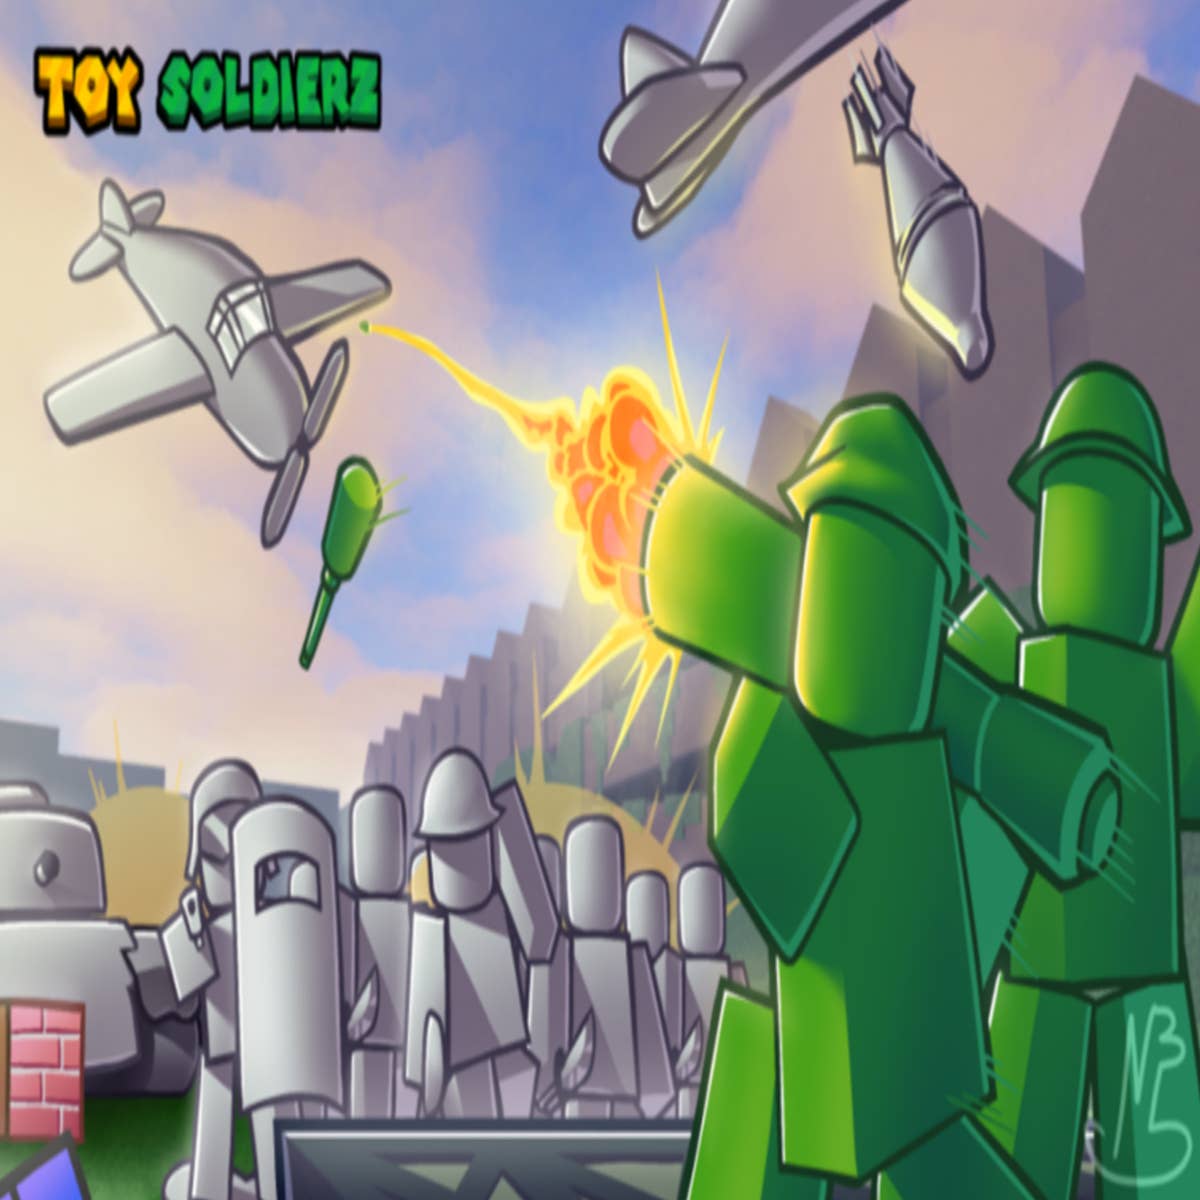 Toy SoldierZ codes - Roblox